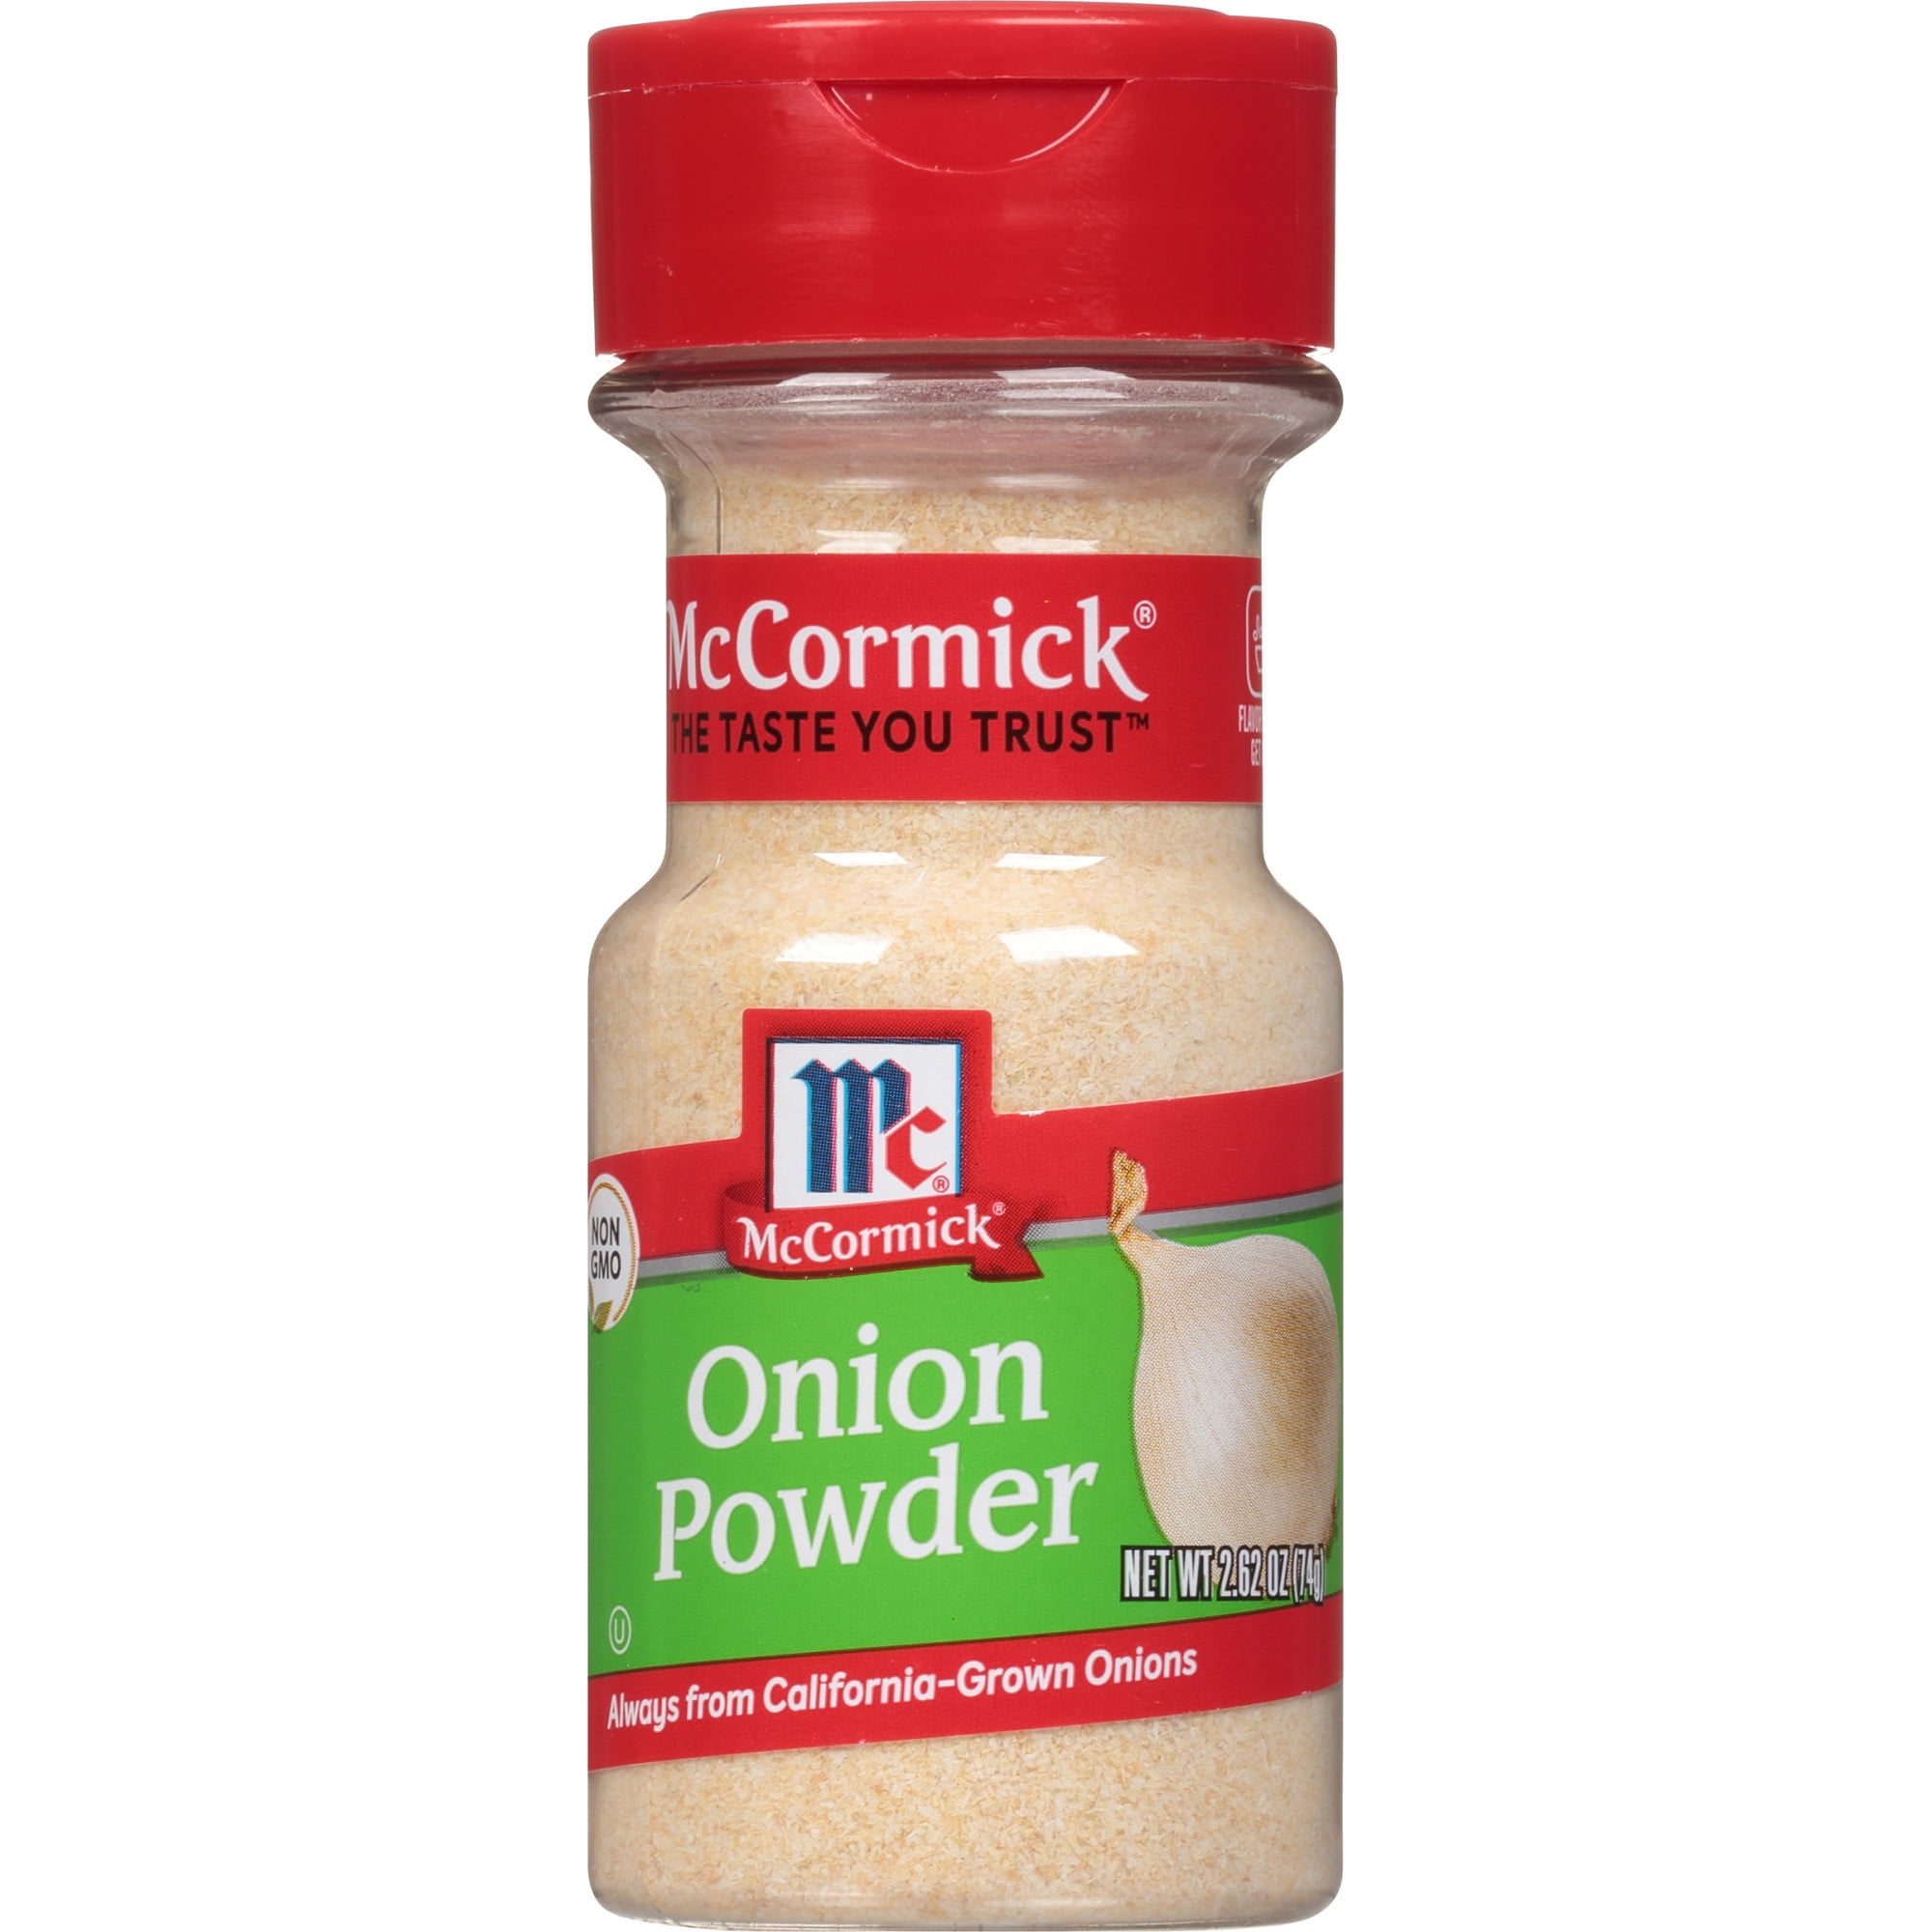 Sour Cream & Onion Seasoning Powder, 12 oz. Bag (Pack of 2)